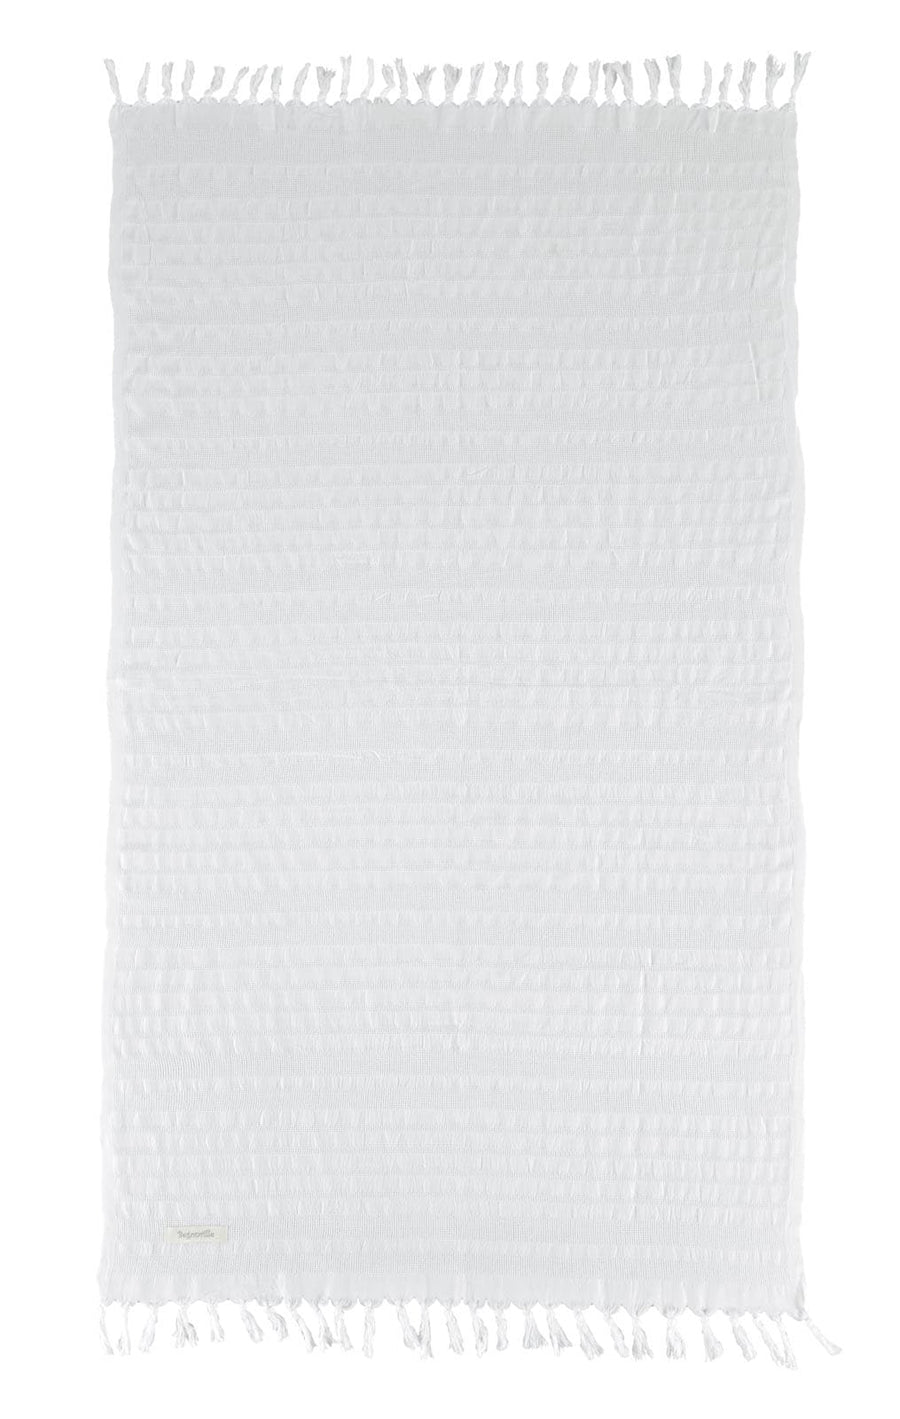 Beacon White Cotton Towel - White